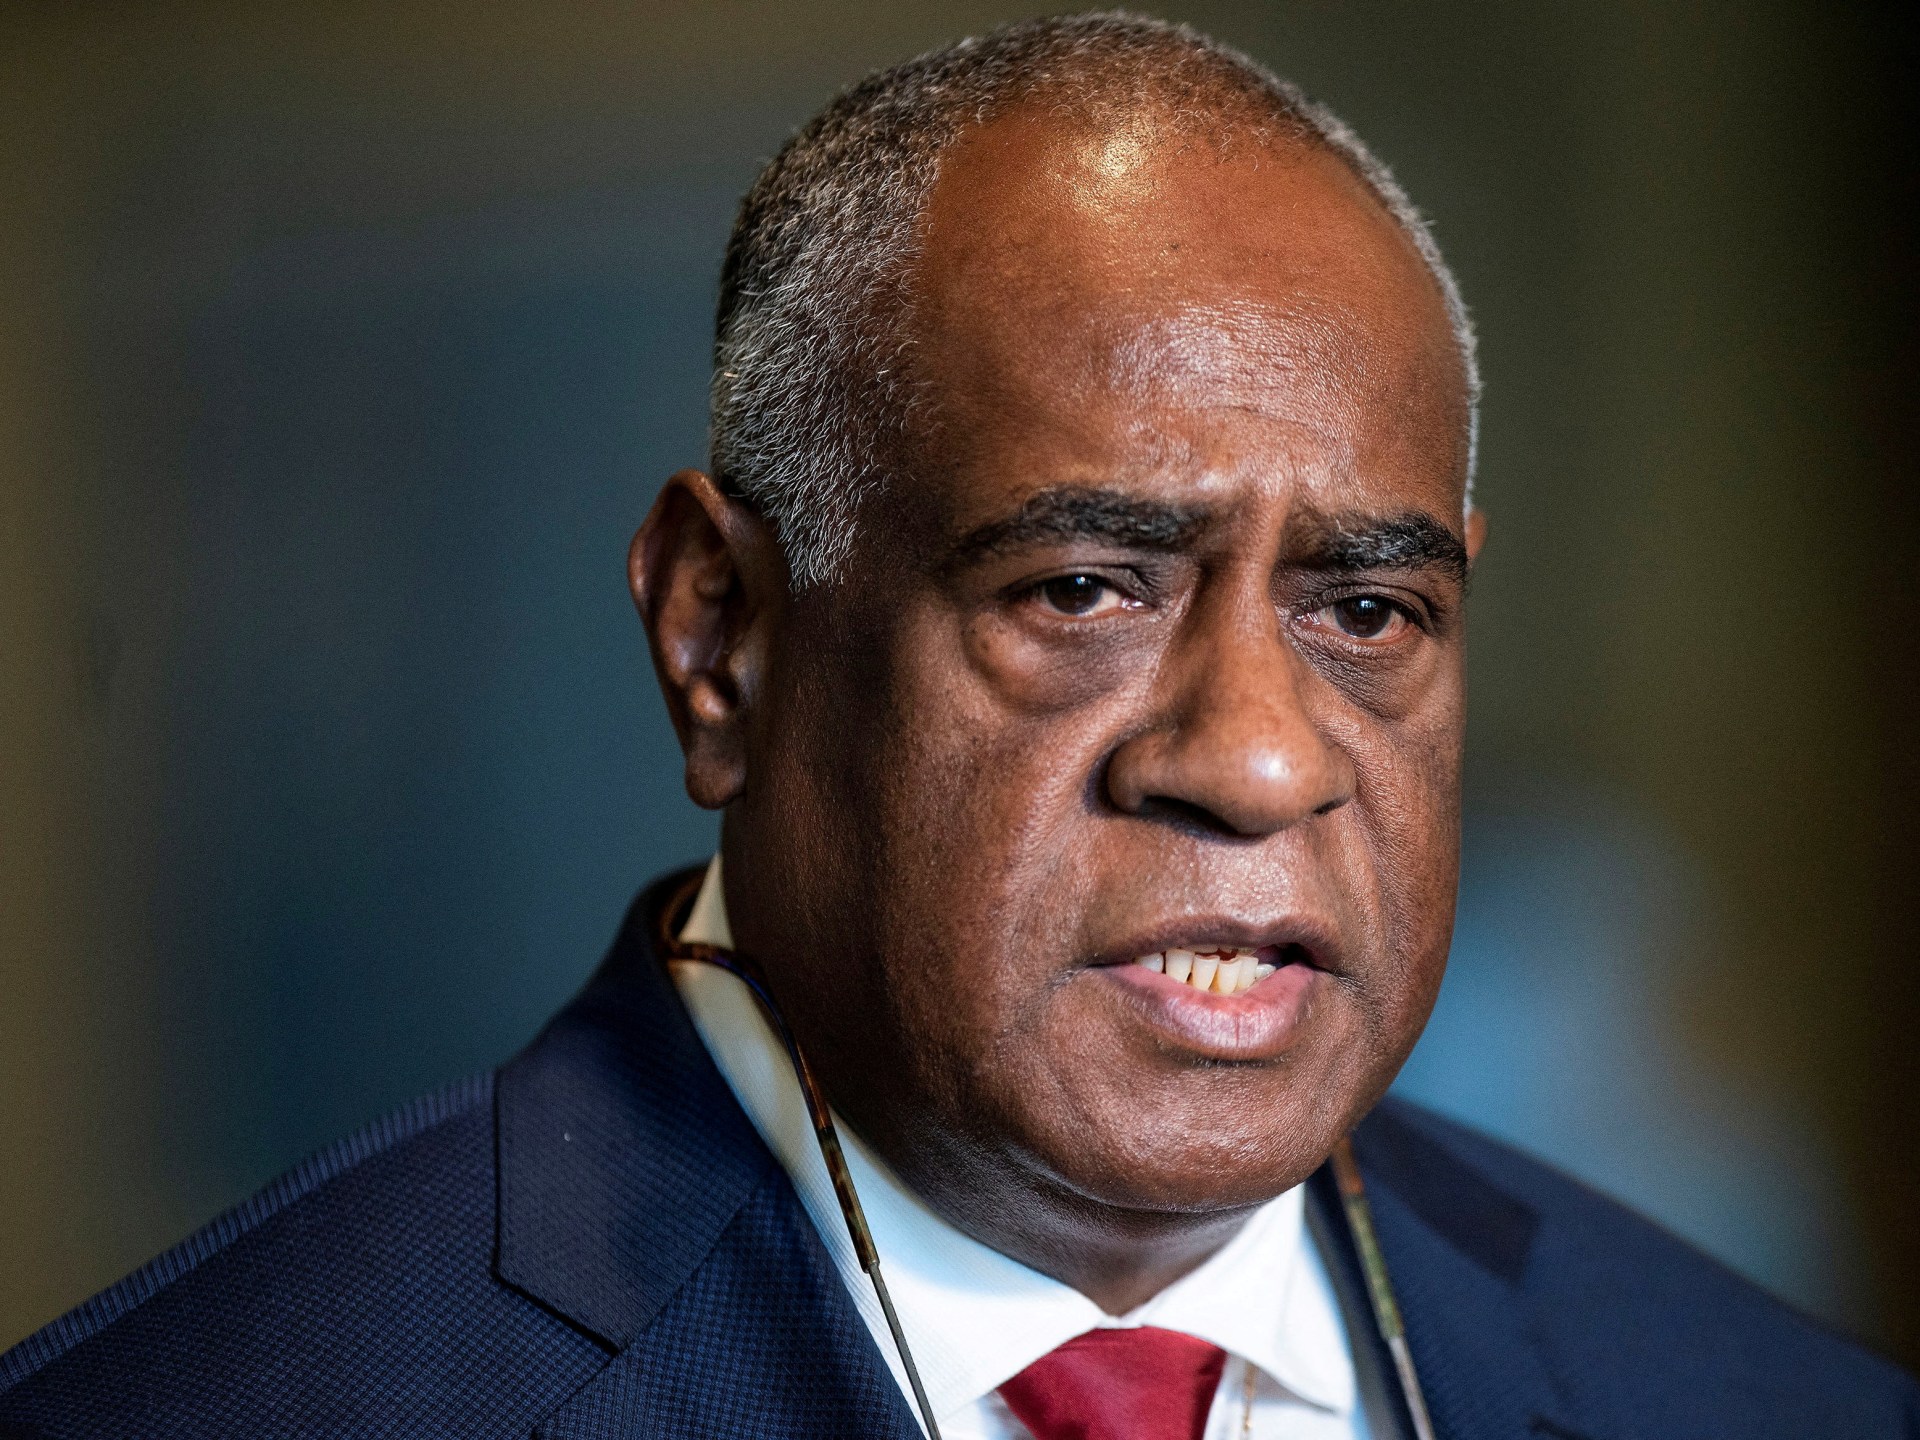 ستنتخب فانواتو رئيسًا جديدًا للوزراء وسط أزمة سياسية بشأن الاتفاقية الأمنية الأسترالية  أخبار السياسة